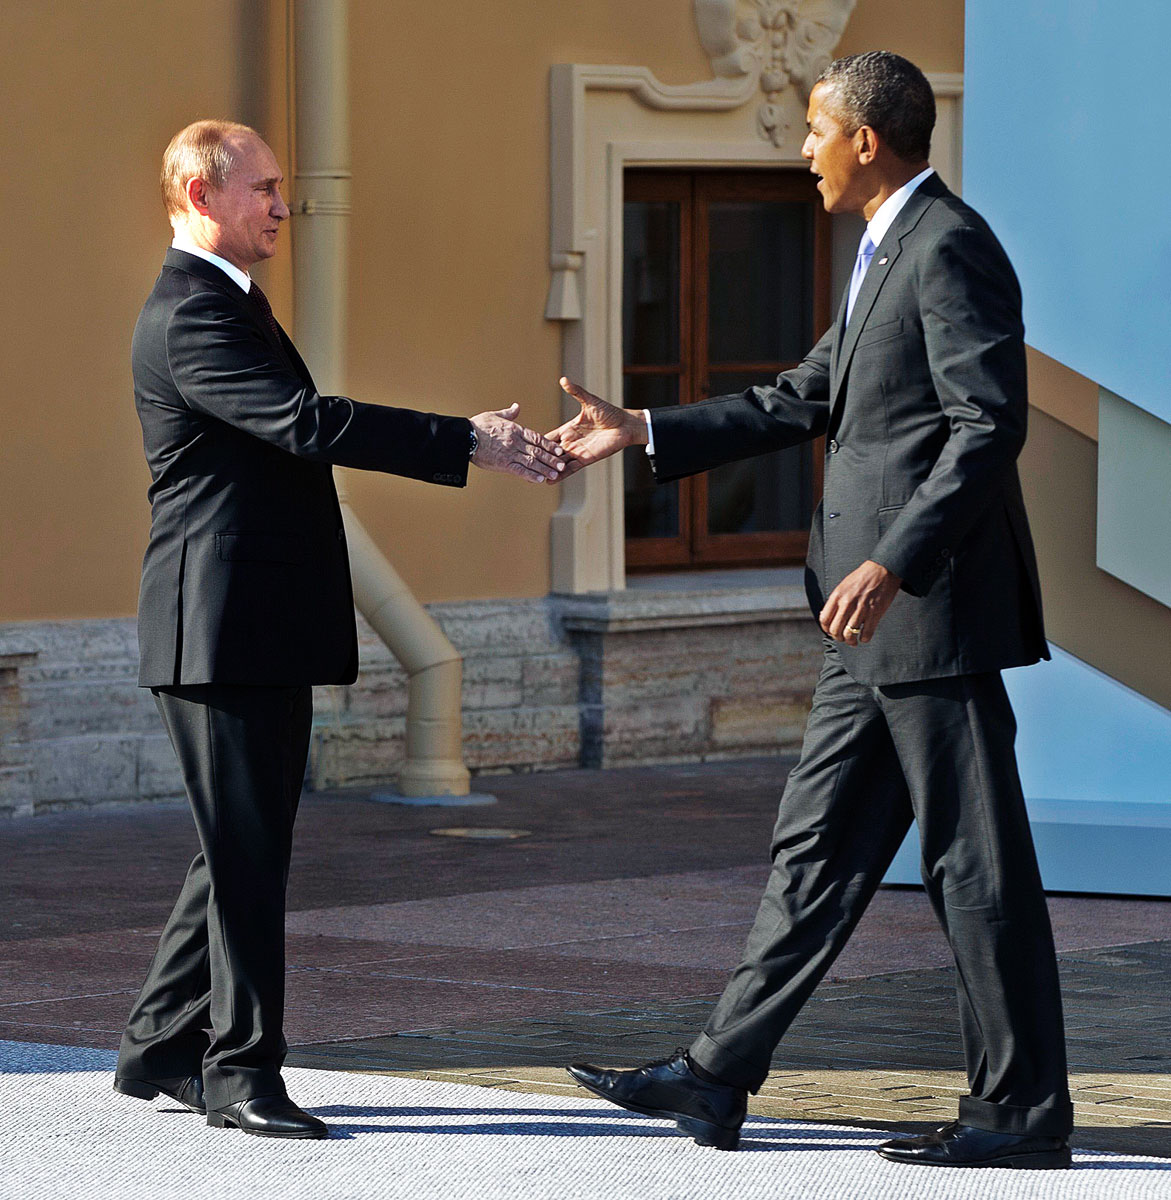 Putyin és Obama kézfogása. Nem jó a viszony